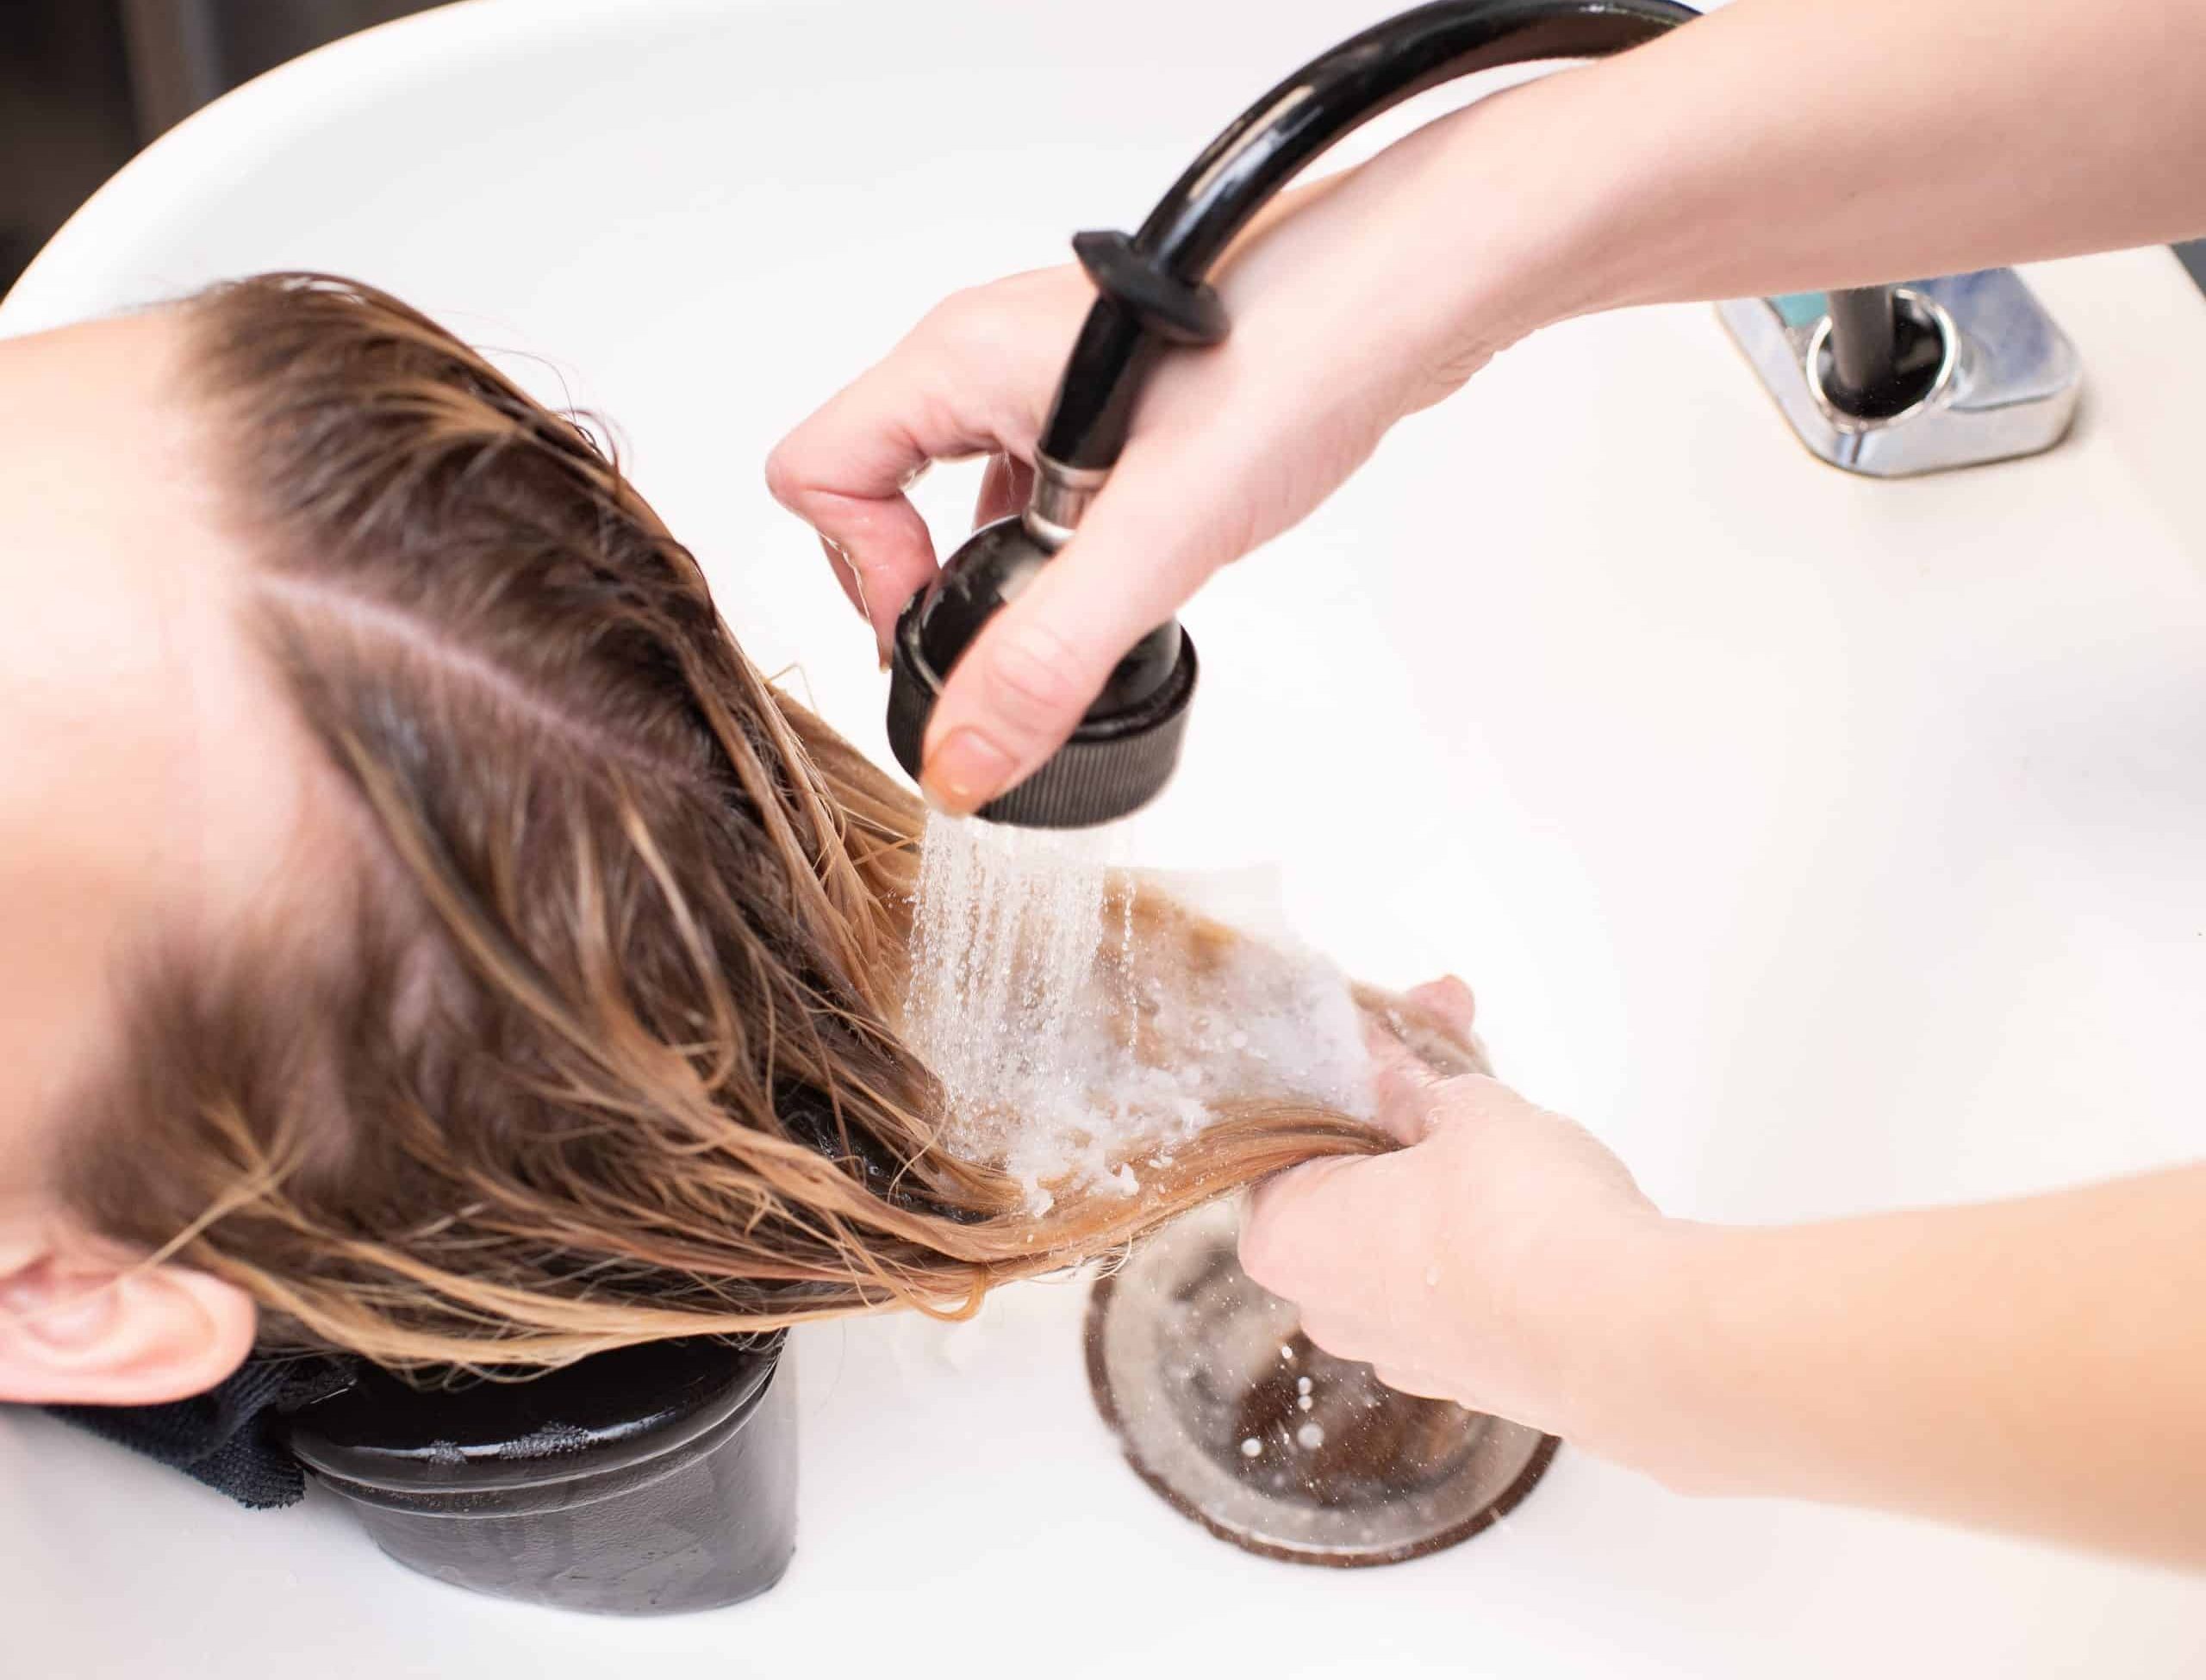 Client having their hair washed at a hair salon.